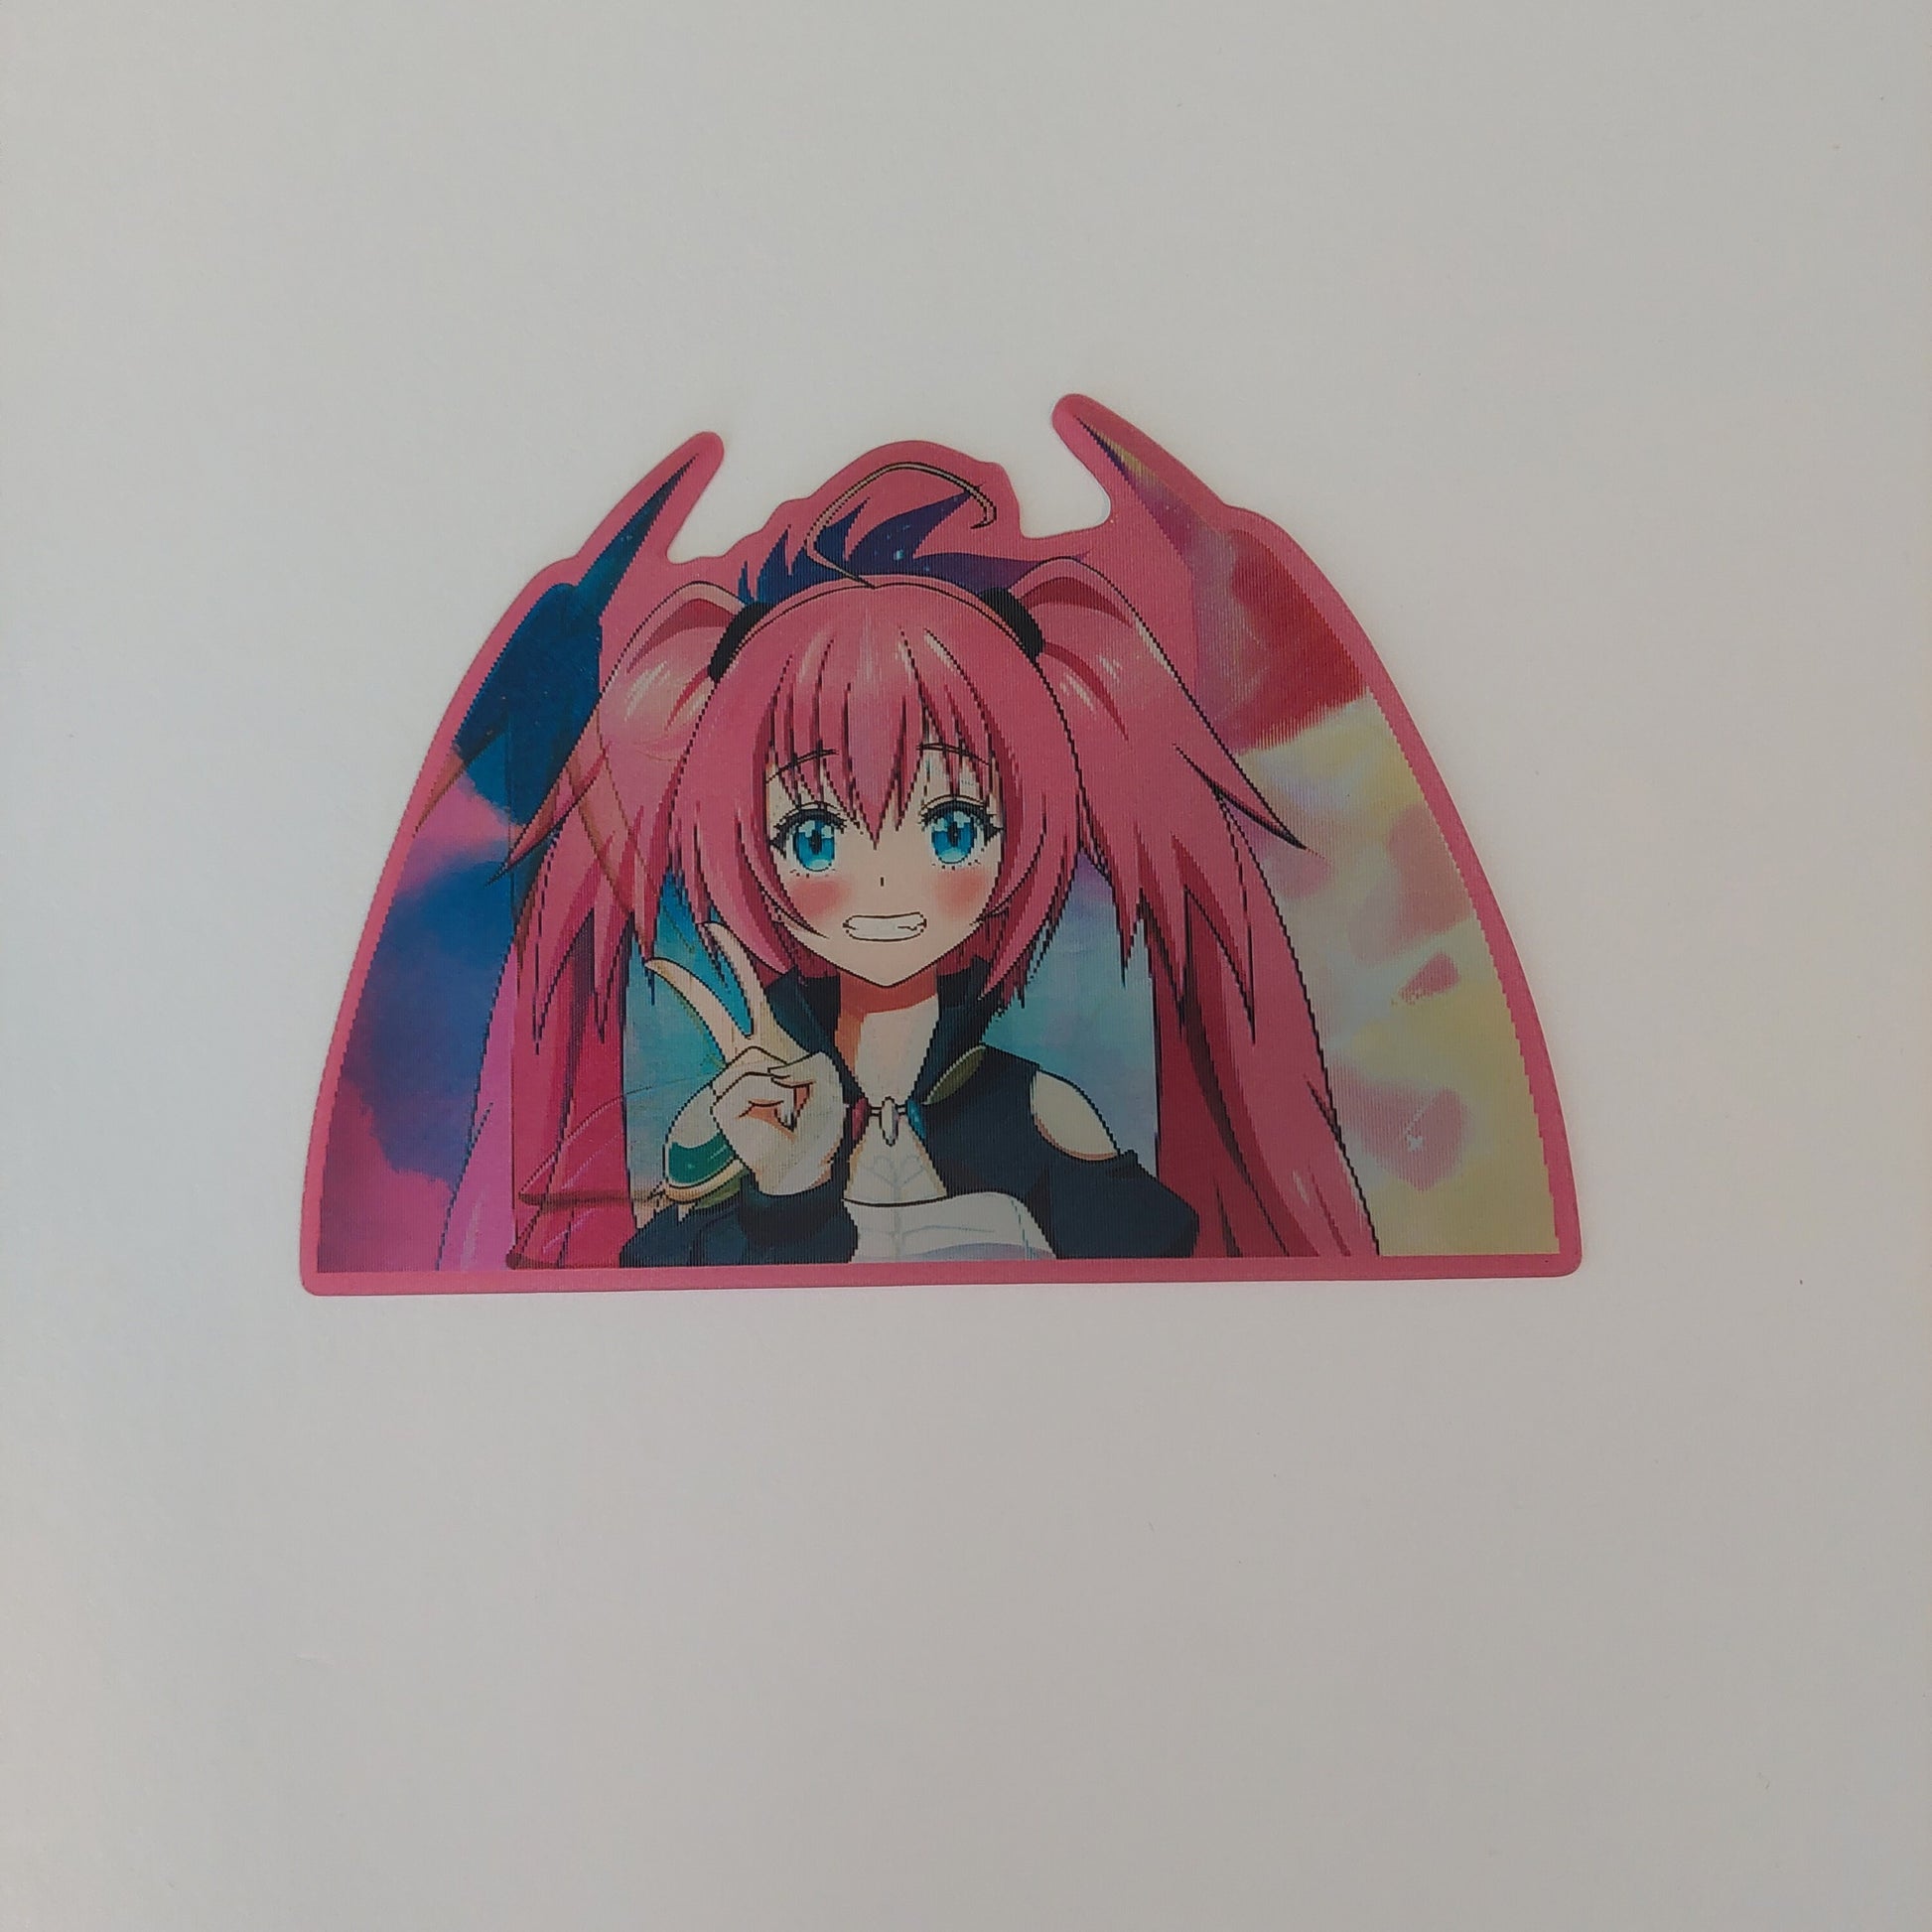 Transforming Demon Girl, Peeker Sticker, 3D Lenticular Car Sticker, Motion Sticker, Anime Sticker, Kawaii Sticker